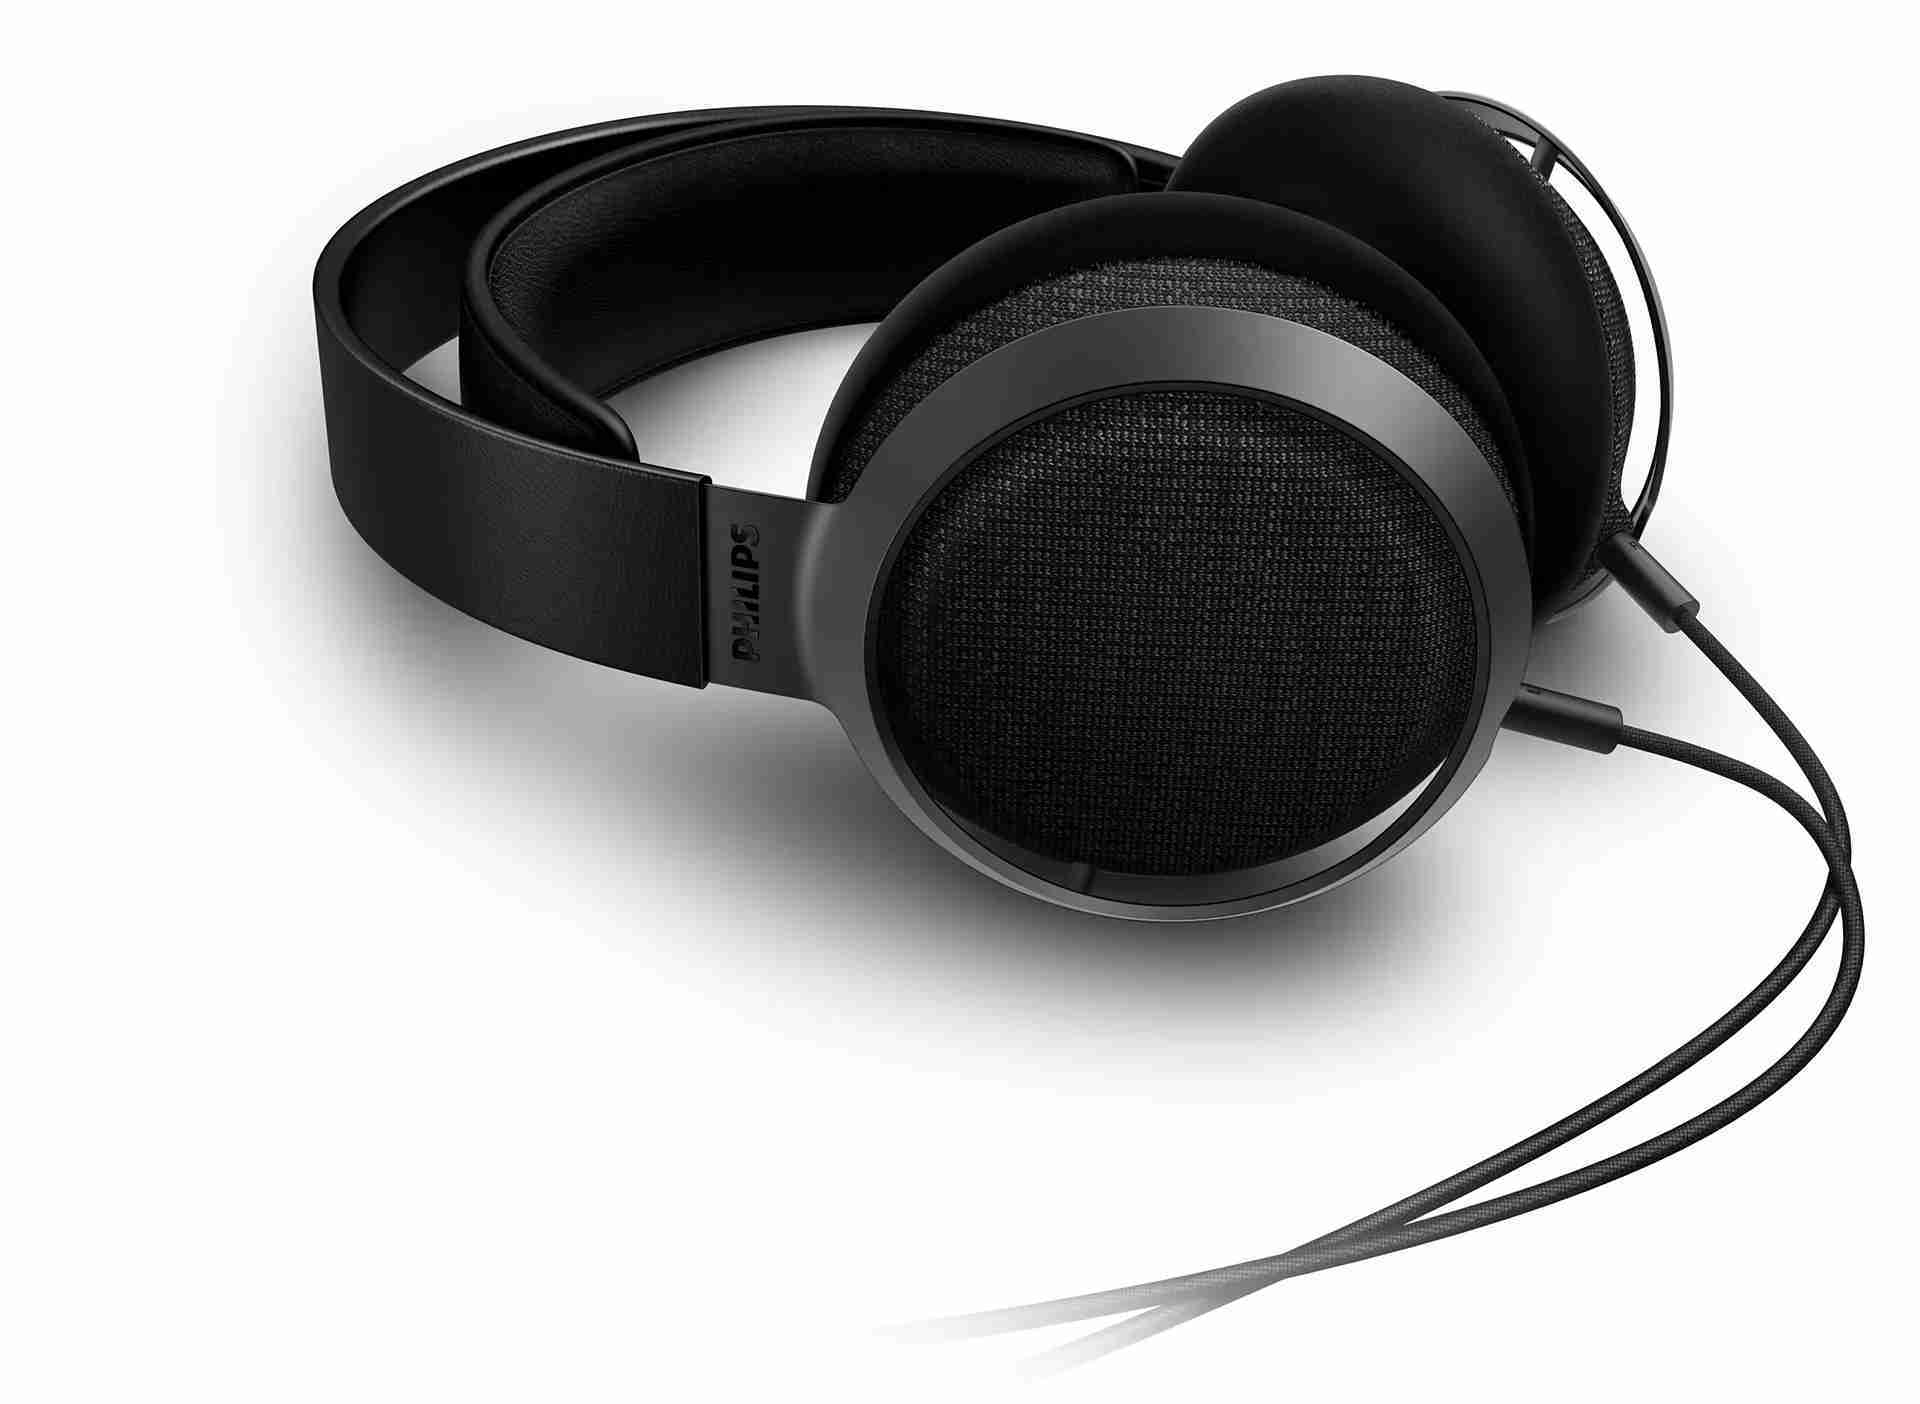 新竹立聲 | Philips Fidelio X3 Hi-Fi 立體耳機耳罩式耳機 台灣智選家公司貨 加贈木製耳機架